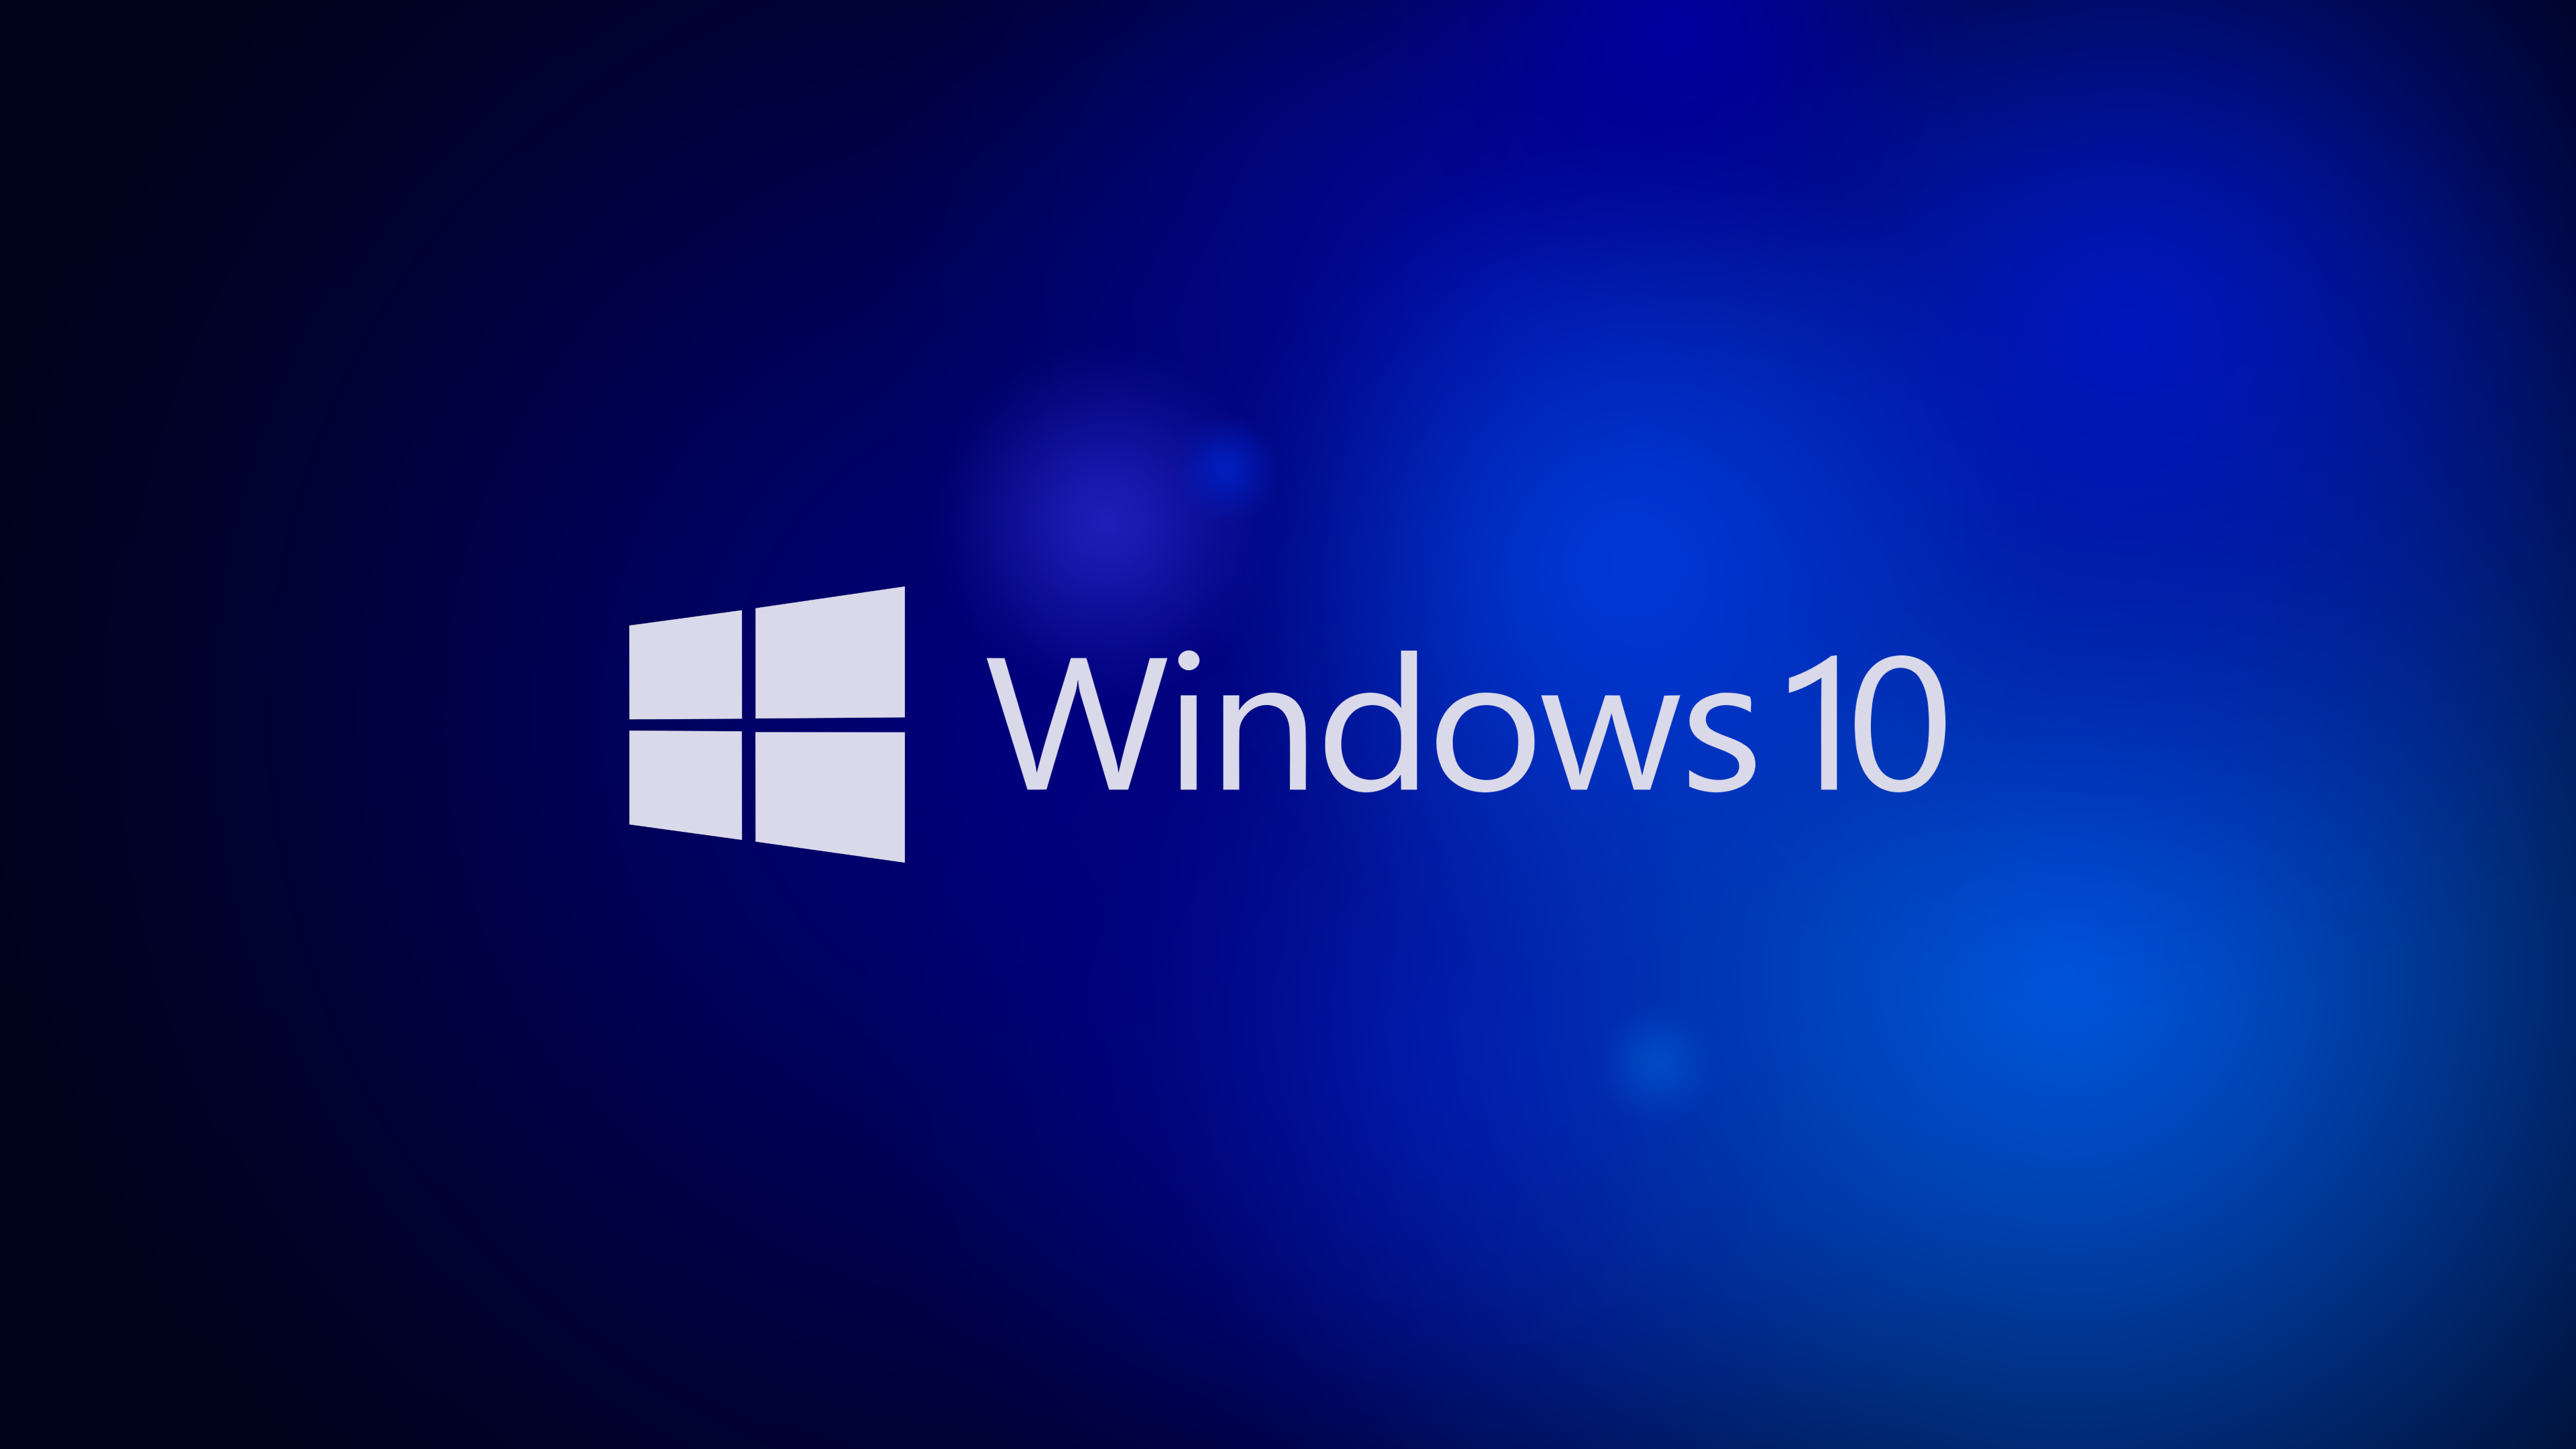 Windows 10 4K Wallpaper by RV770 on DeviantArt